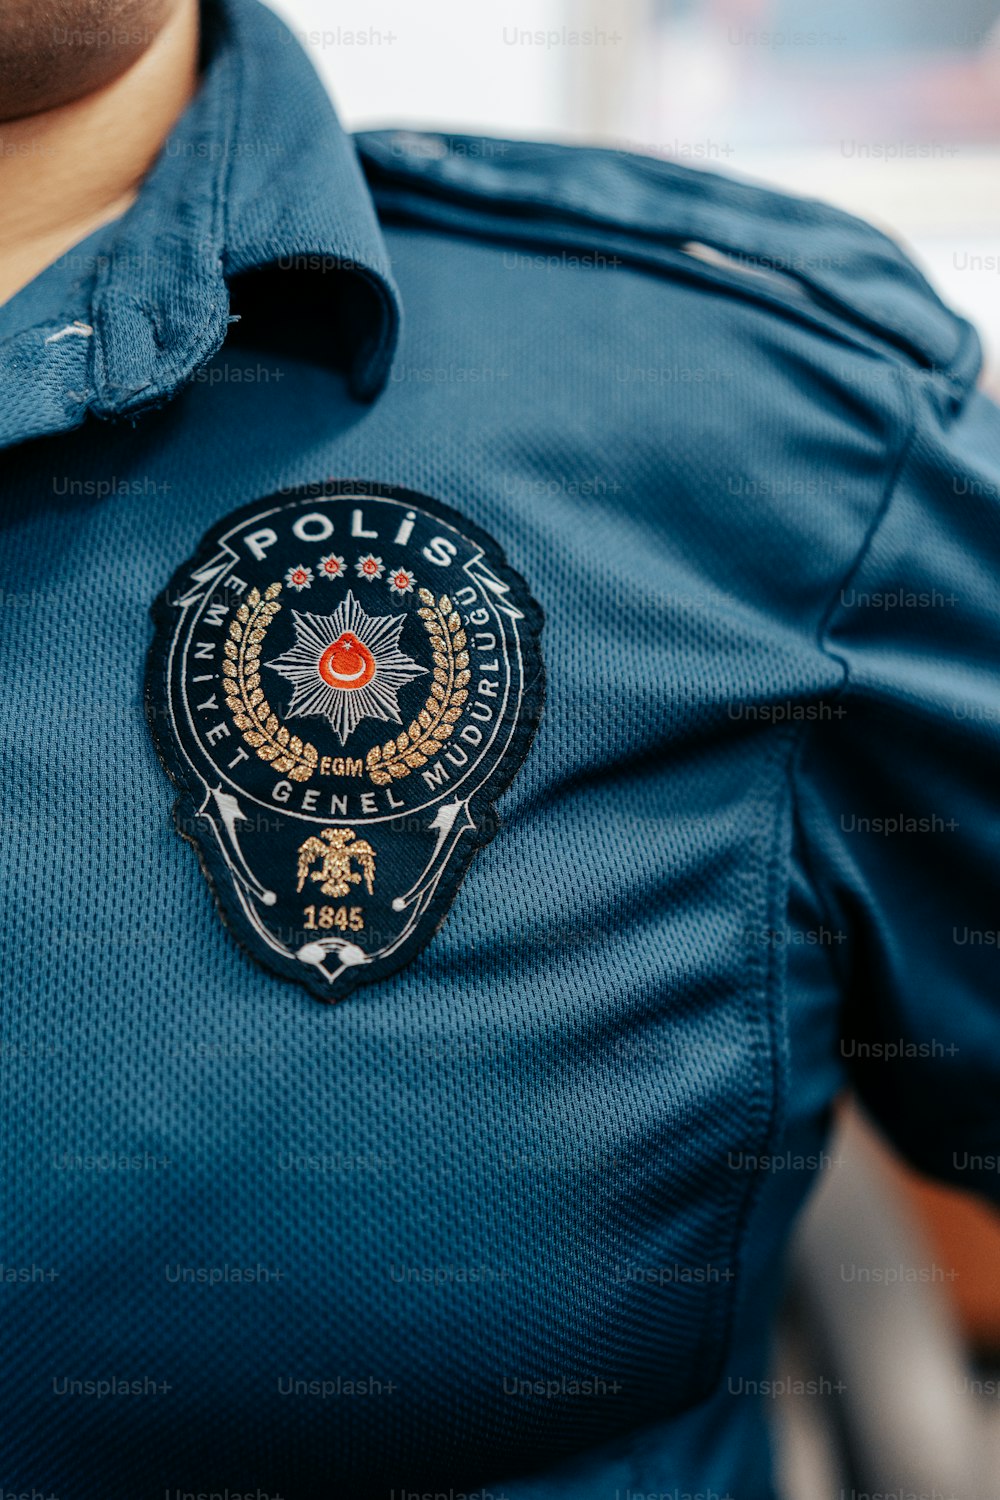 Ein Polizist trägt eine blaue Uniform